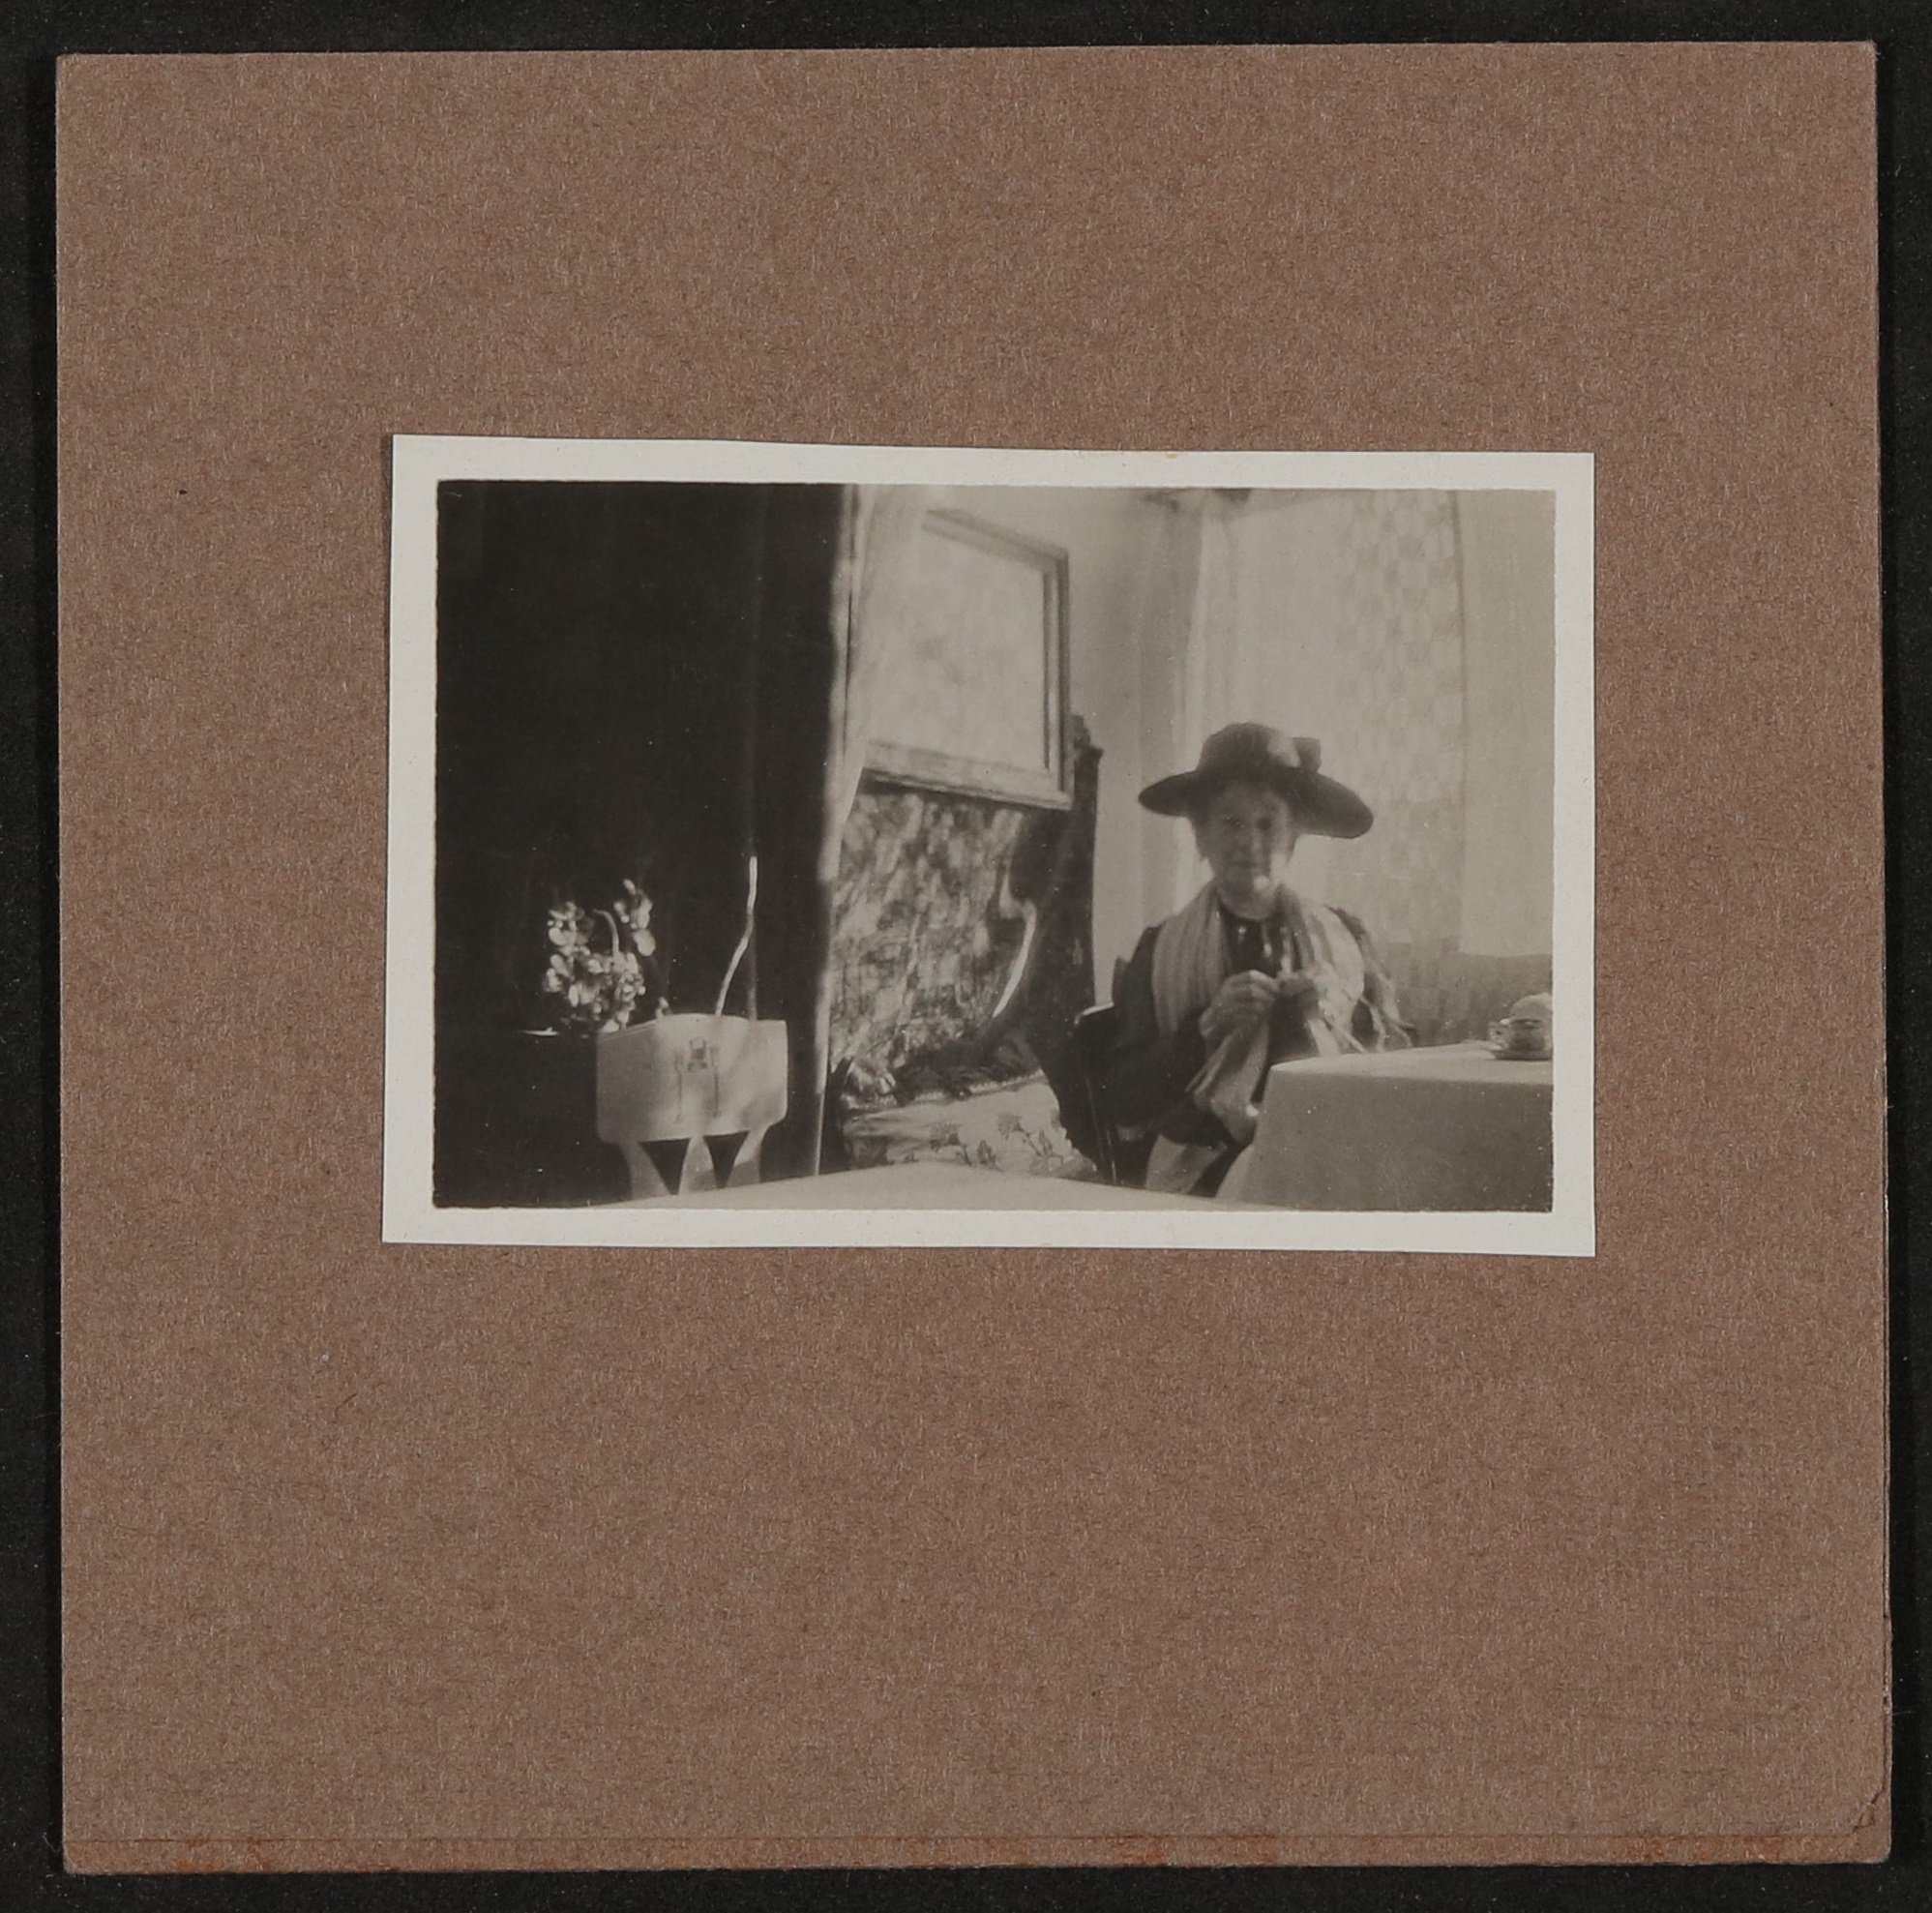 Unbekannte strickende Dame mit Hut in einem Wohnzimmer oder Café sitzend (Freies Deutsches Hochstift / Frankfurter Goethe-Museum CC BY-NC-SA)